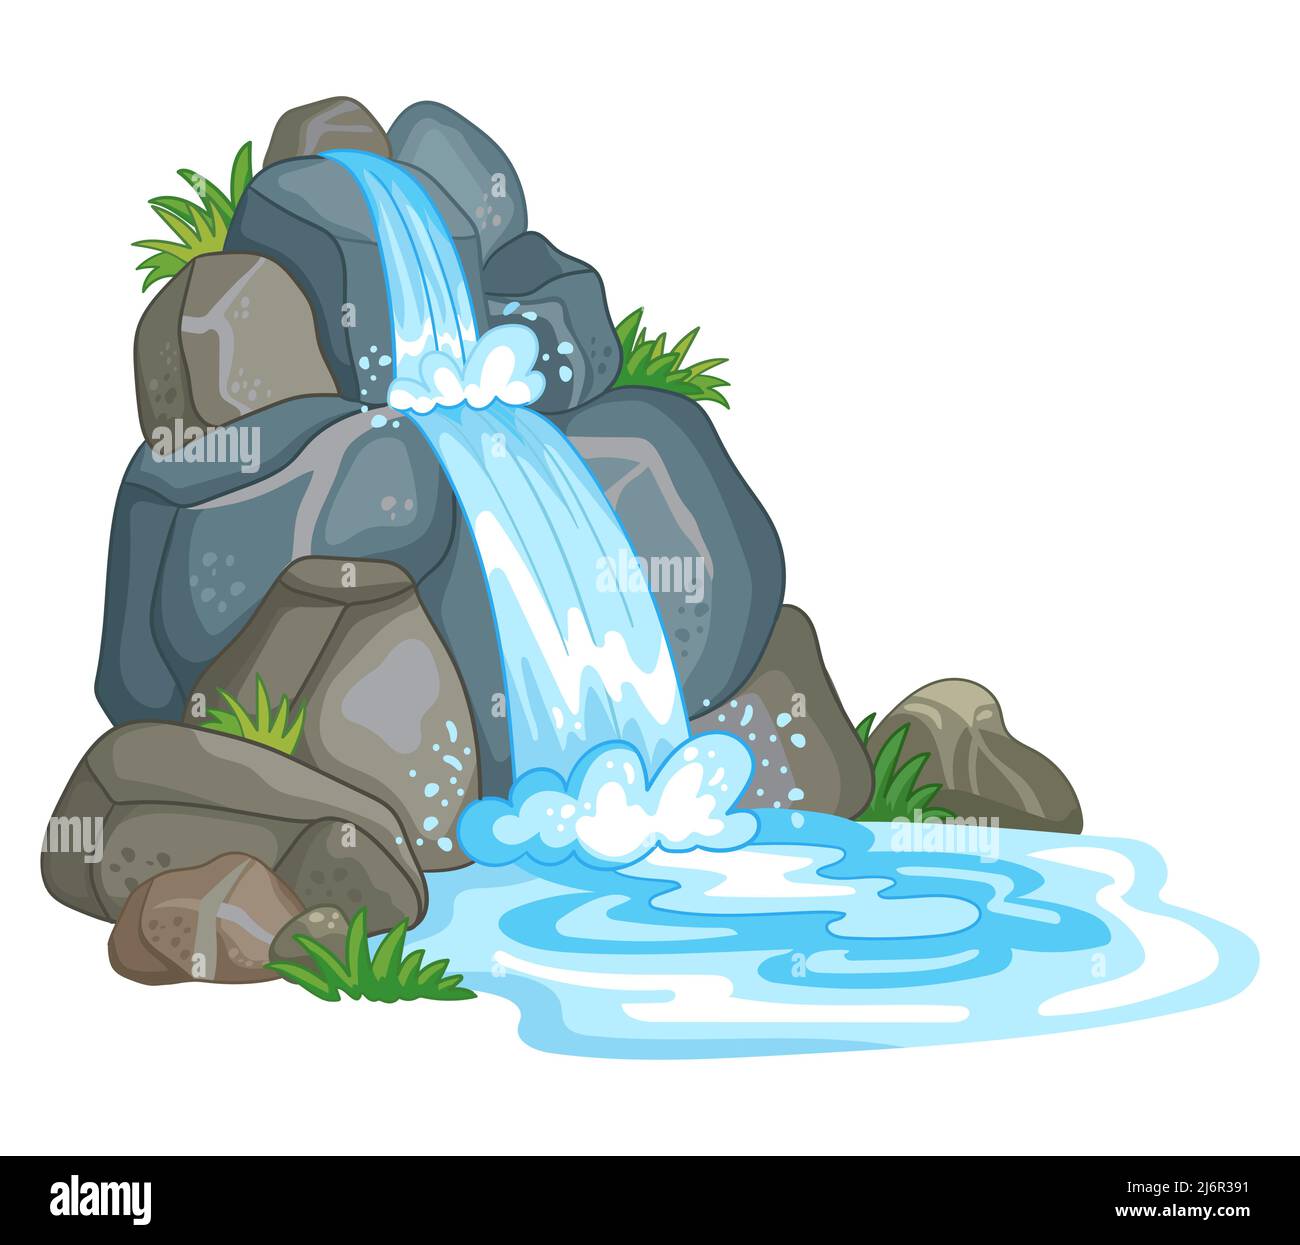 Wasserfall zwischen Felsen. Kaskade schimmert nach unten. Fließendes Wasser. Vektor-Illustration in niedlichen Cartoon-Stil isoliert auf weißem Hintergrund. Zum Drucken, de Stock Vektor